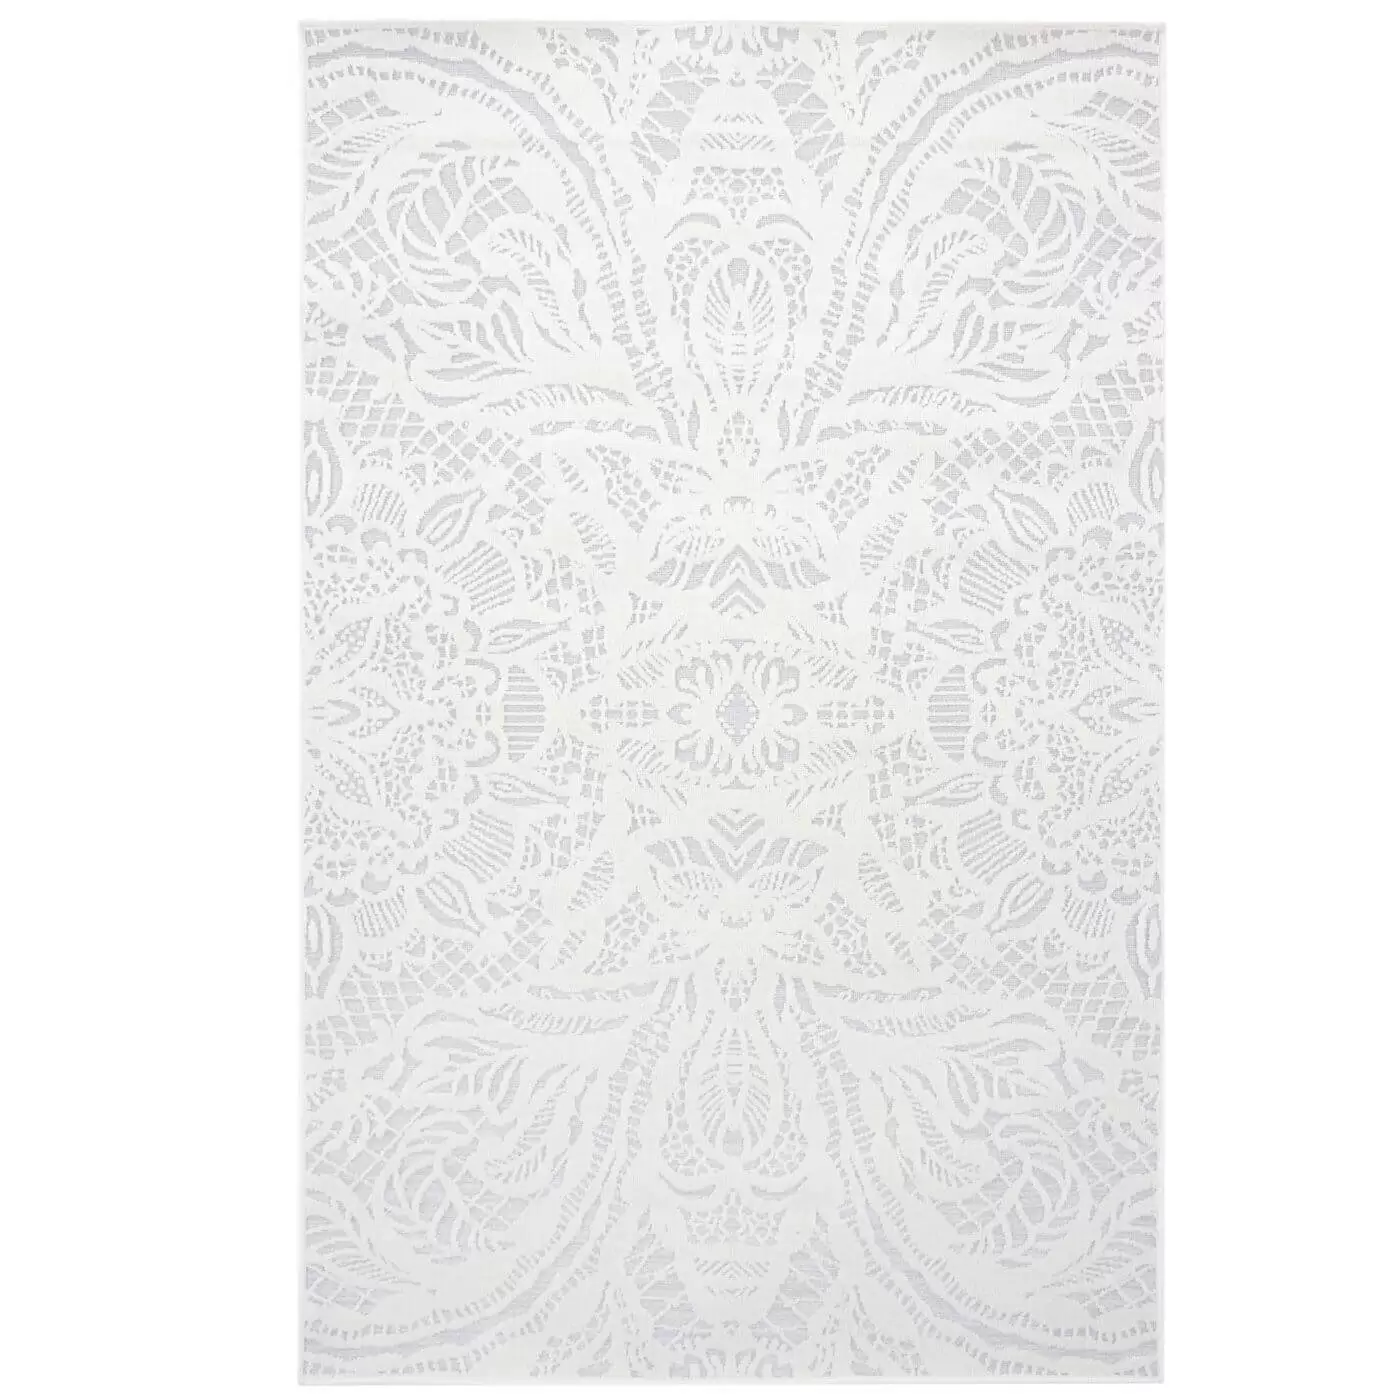 Dywanik jasny do sypialni ALEKSANDRA. Mały dekoracyjny srebrny dywanik w biały wzór 3d jak koronka. Cienki nowoczesny dywanik do sypialni widoczny w całości